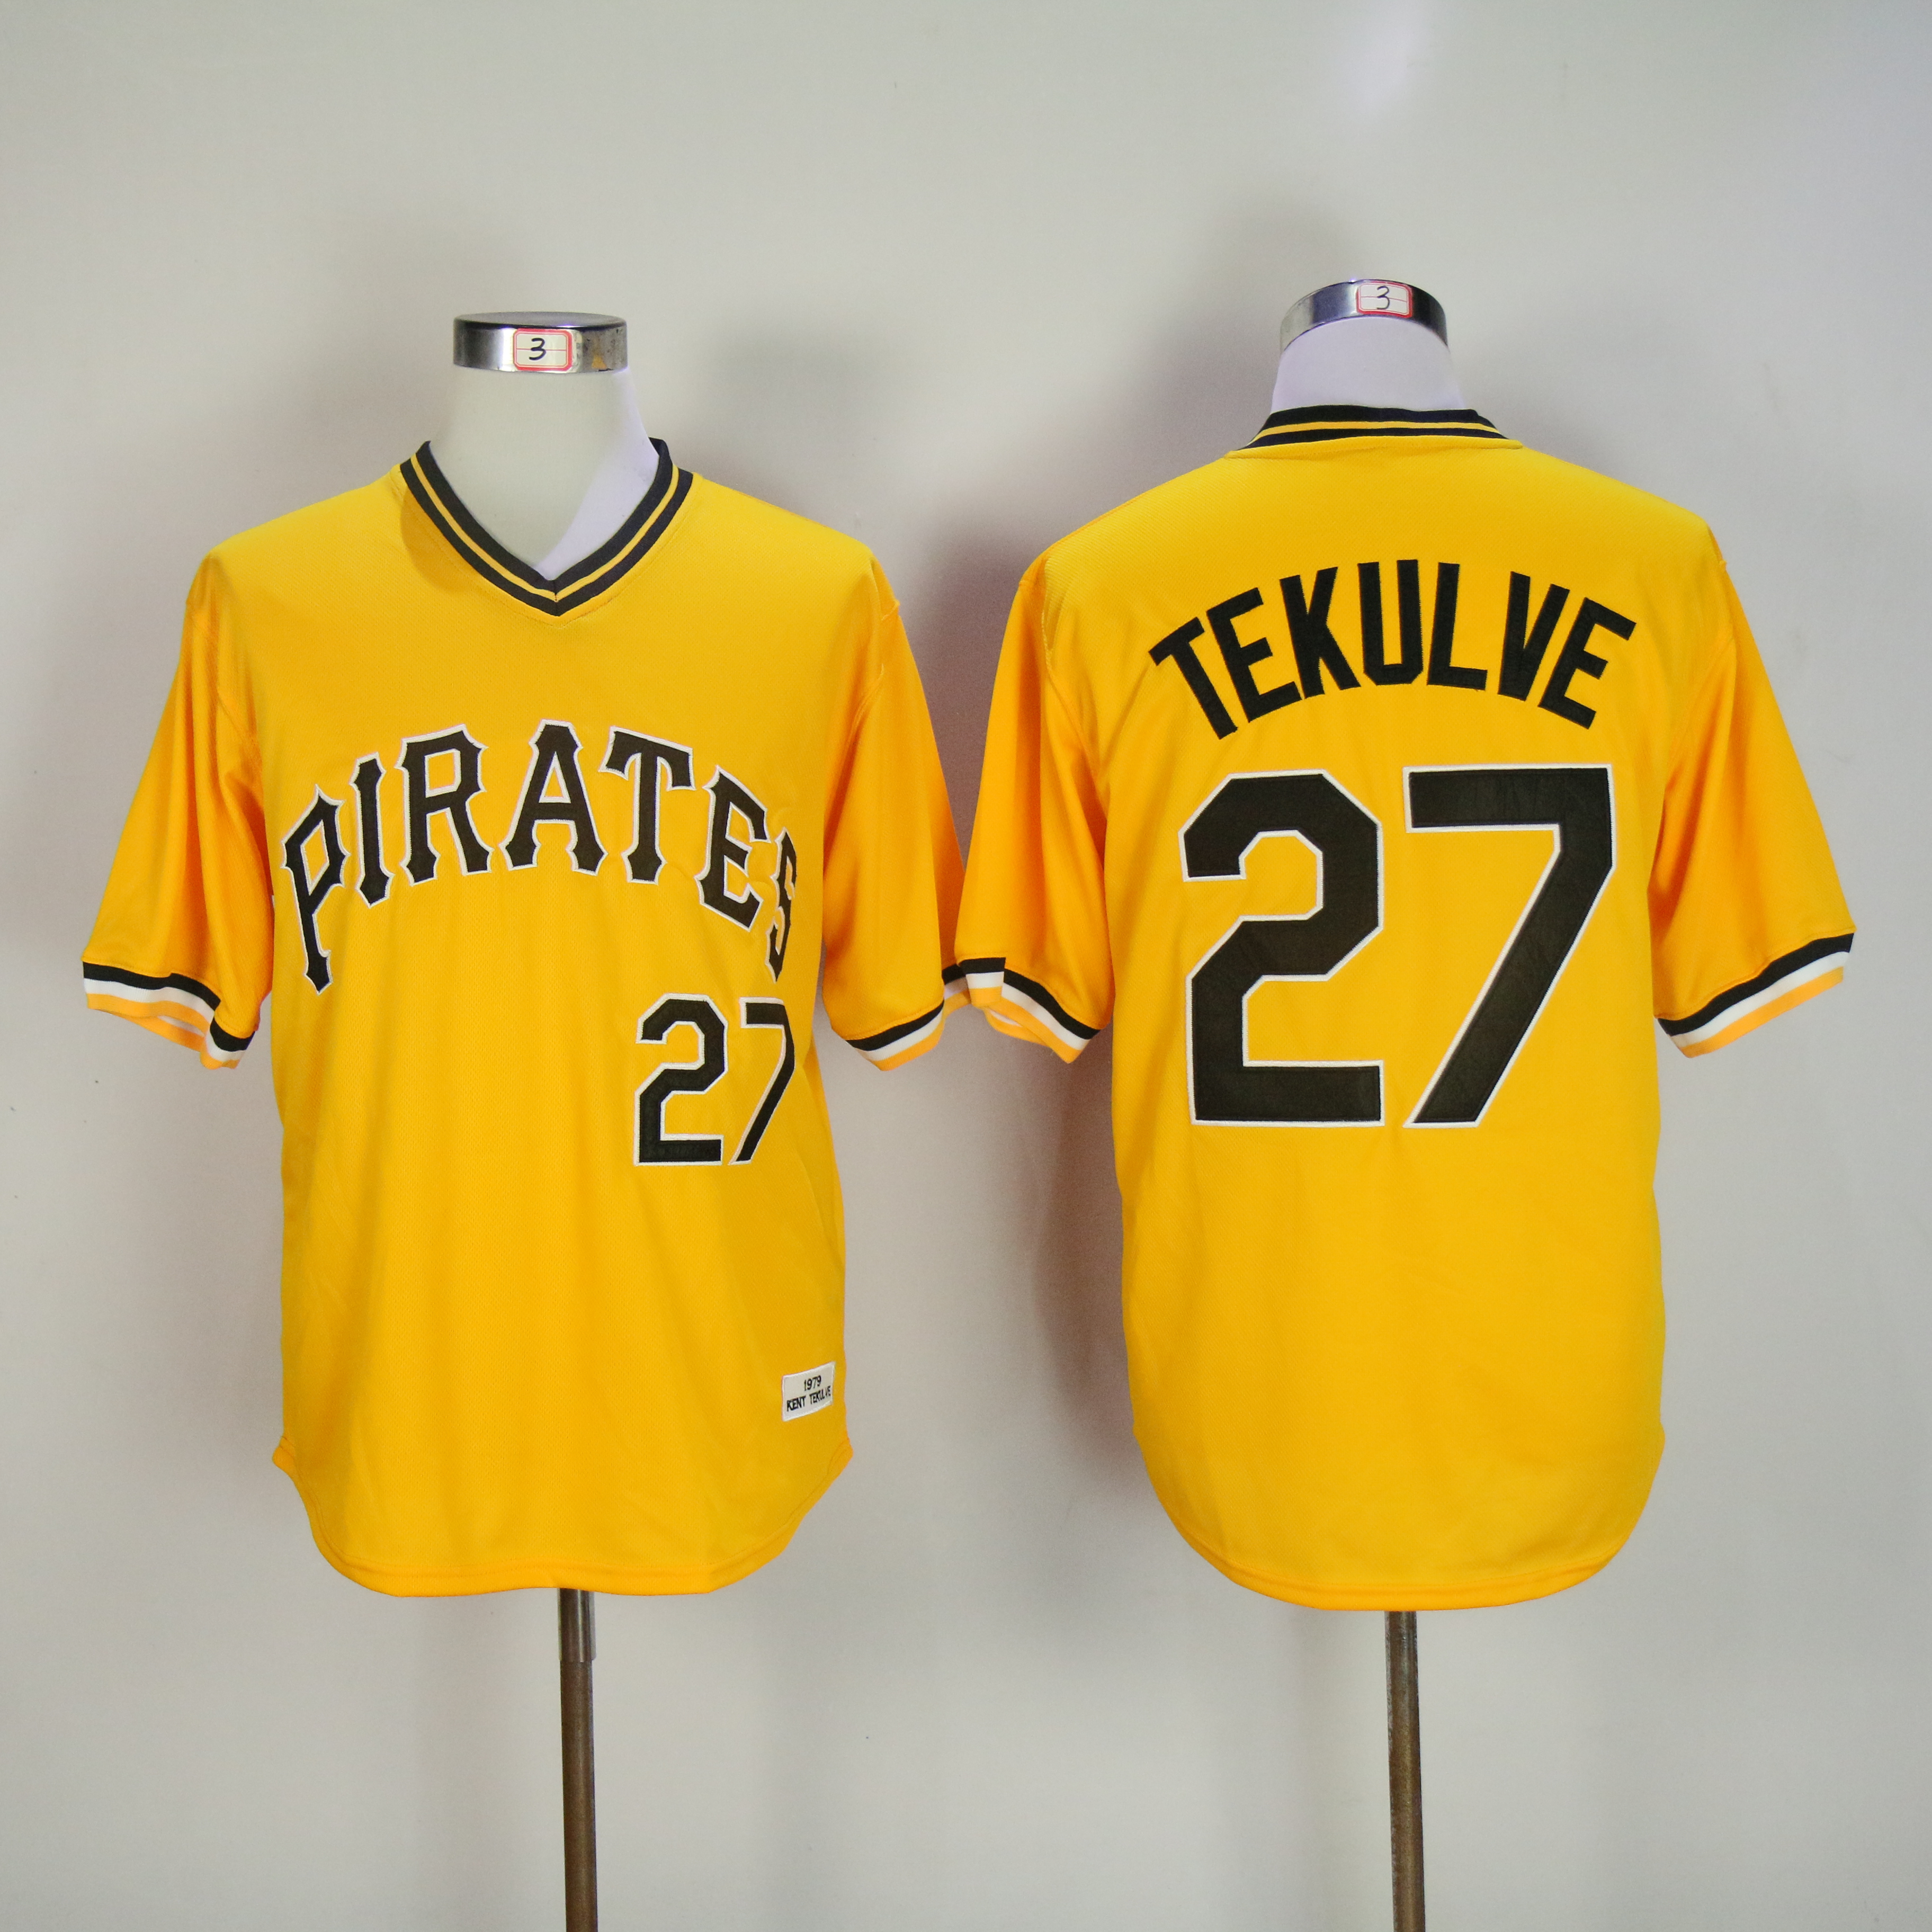 Men Pittsburgh Pirates #27 Tekulve Yellow Throwback MLB Jerseys->pittsburgh pirates->MLB Jersey